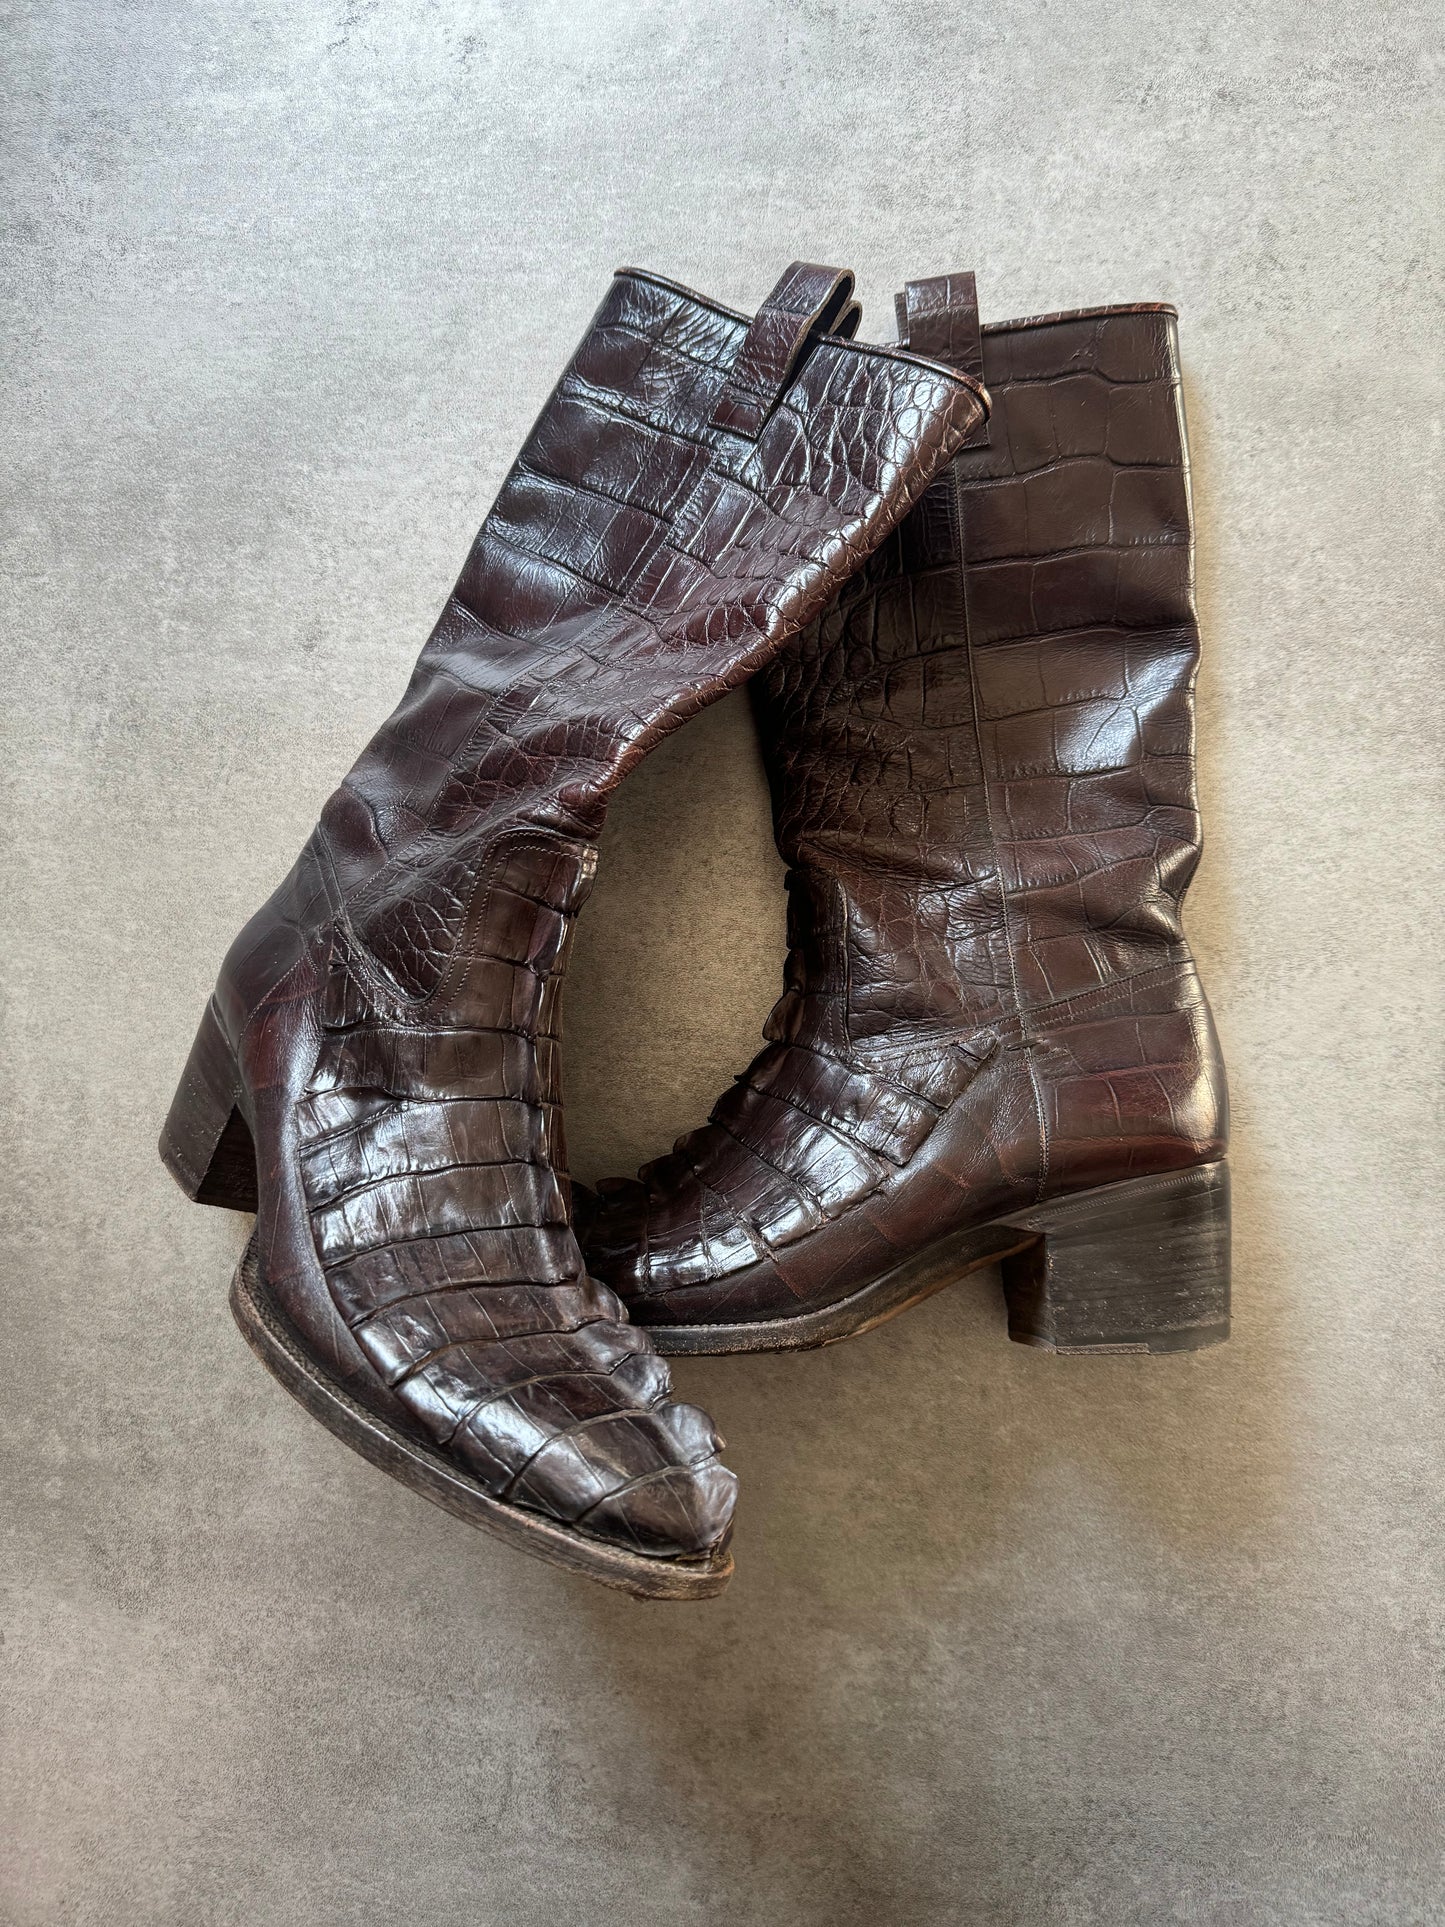 FW2012 Gucci Crocodile Aligator Leather Boots (40,5) - 10